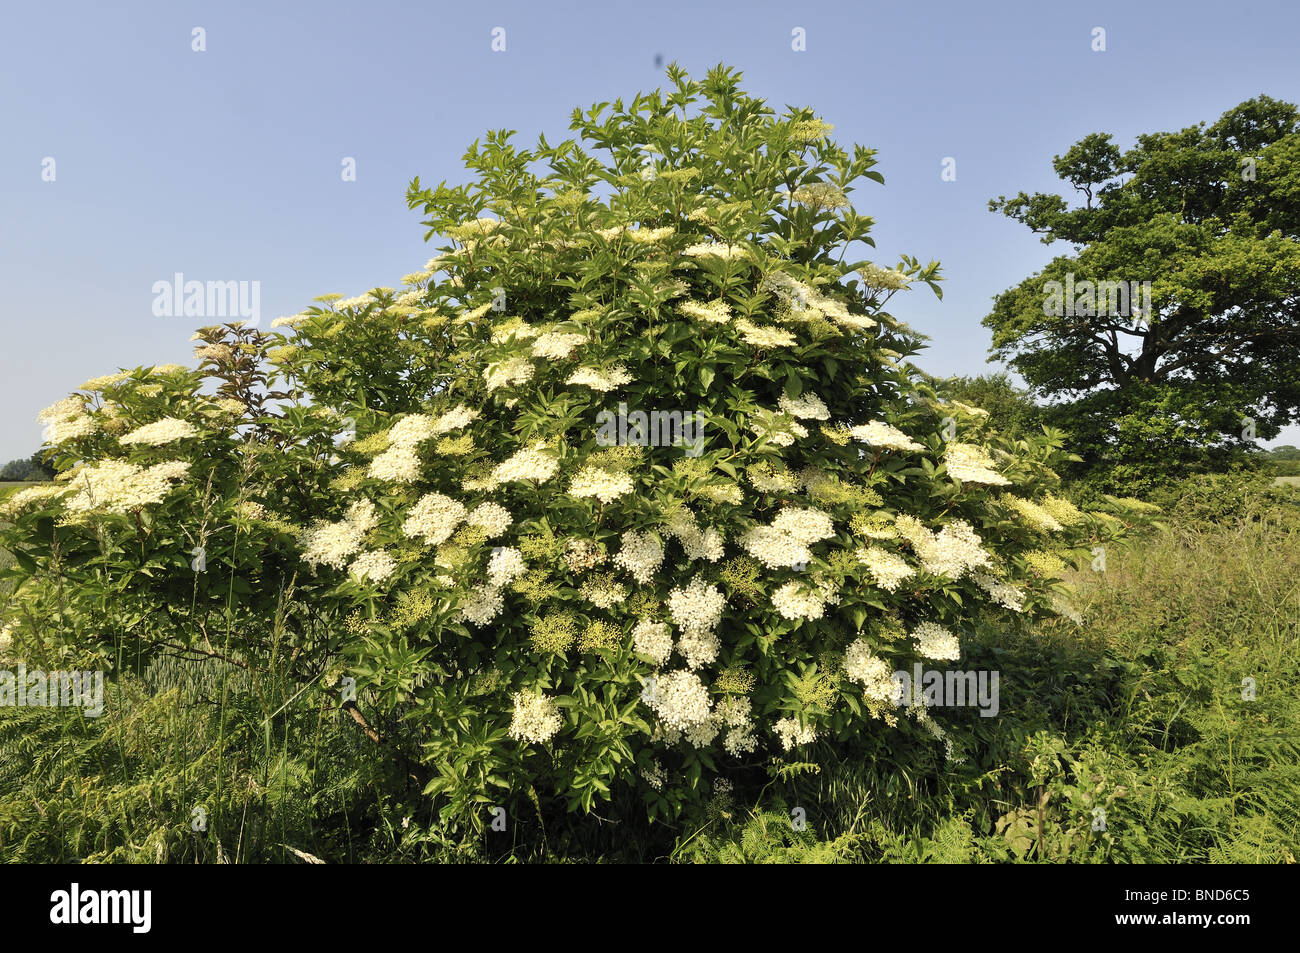 Elder, sambucus nigra, bush in full flower, Norfolk, UK, June Stock Photo